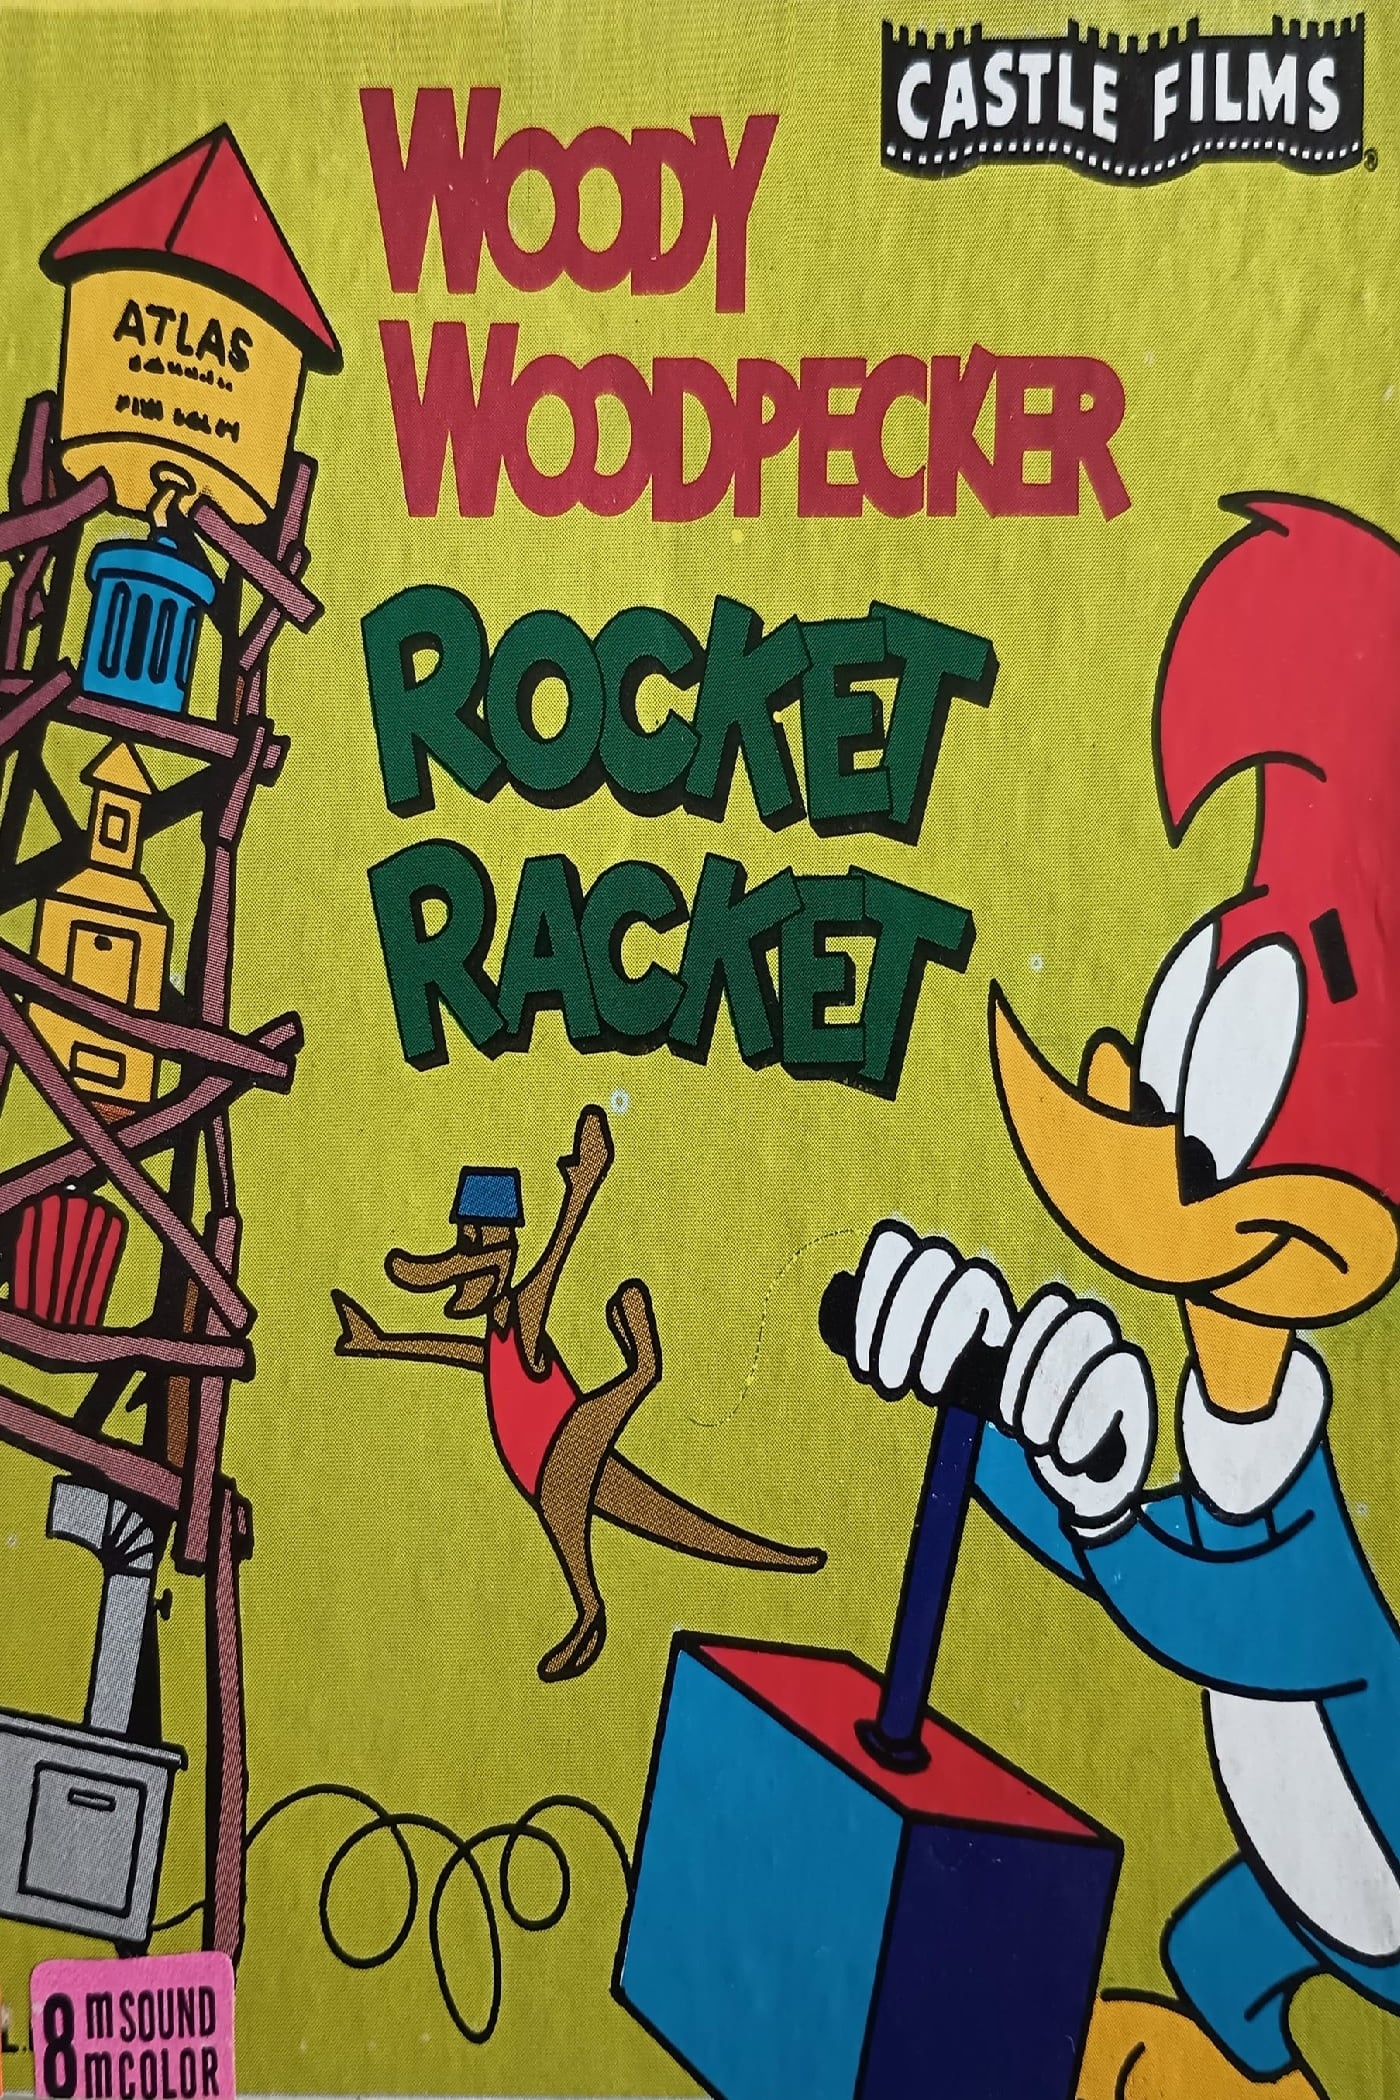 Rocket Racket (1962)